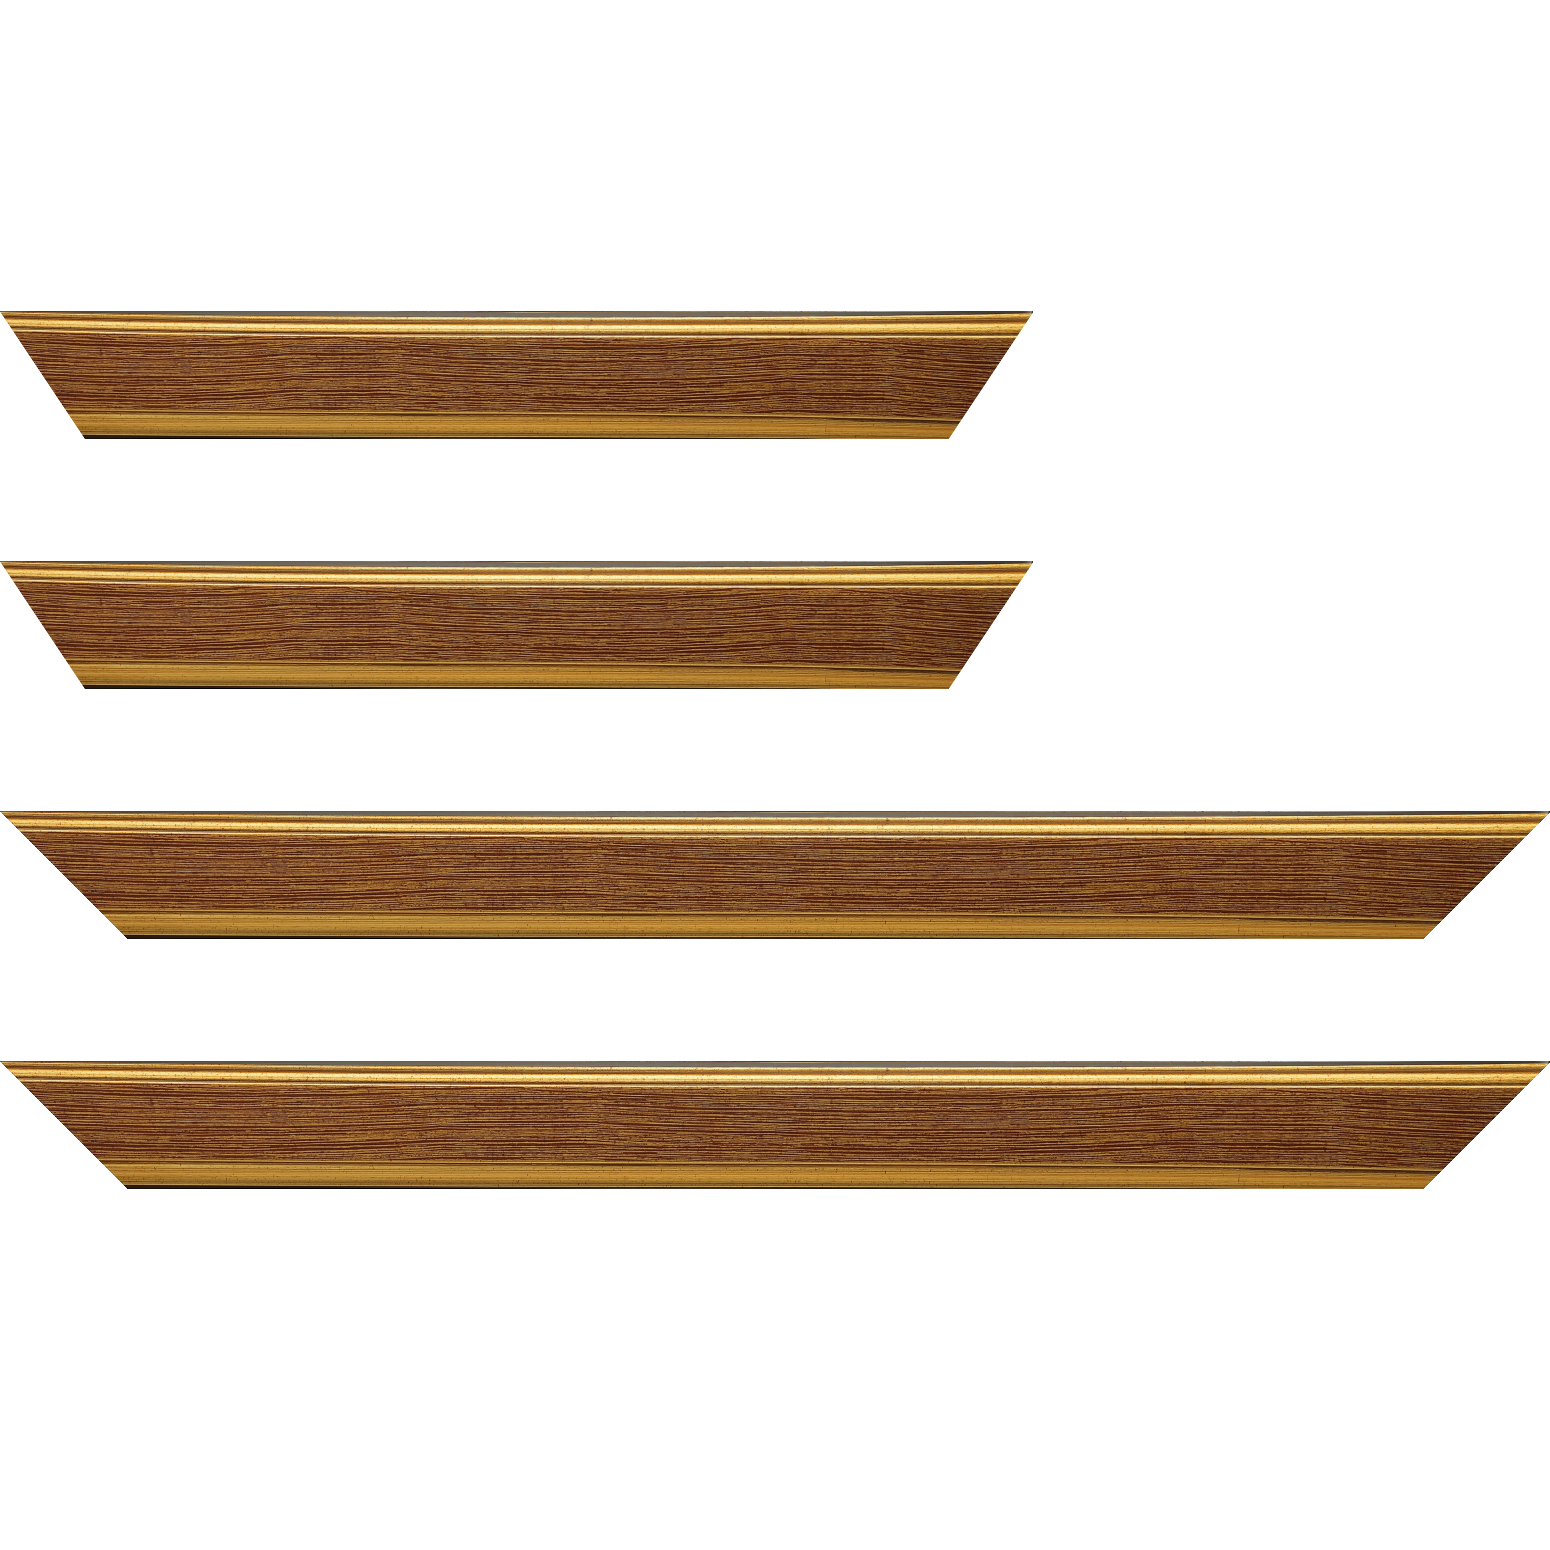 Baguette bois profil plat largeur 3.5cm couleur or fond bordeaux filet or - 34x40